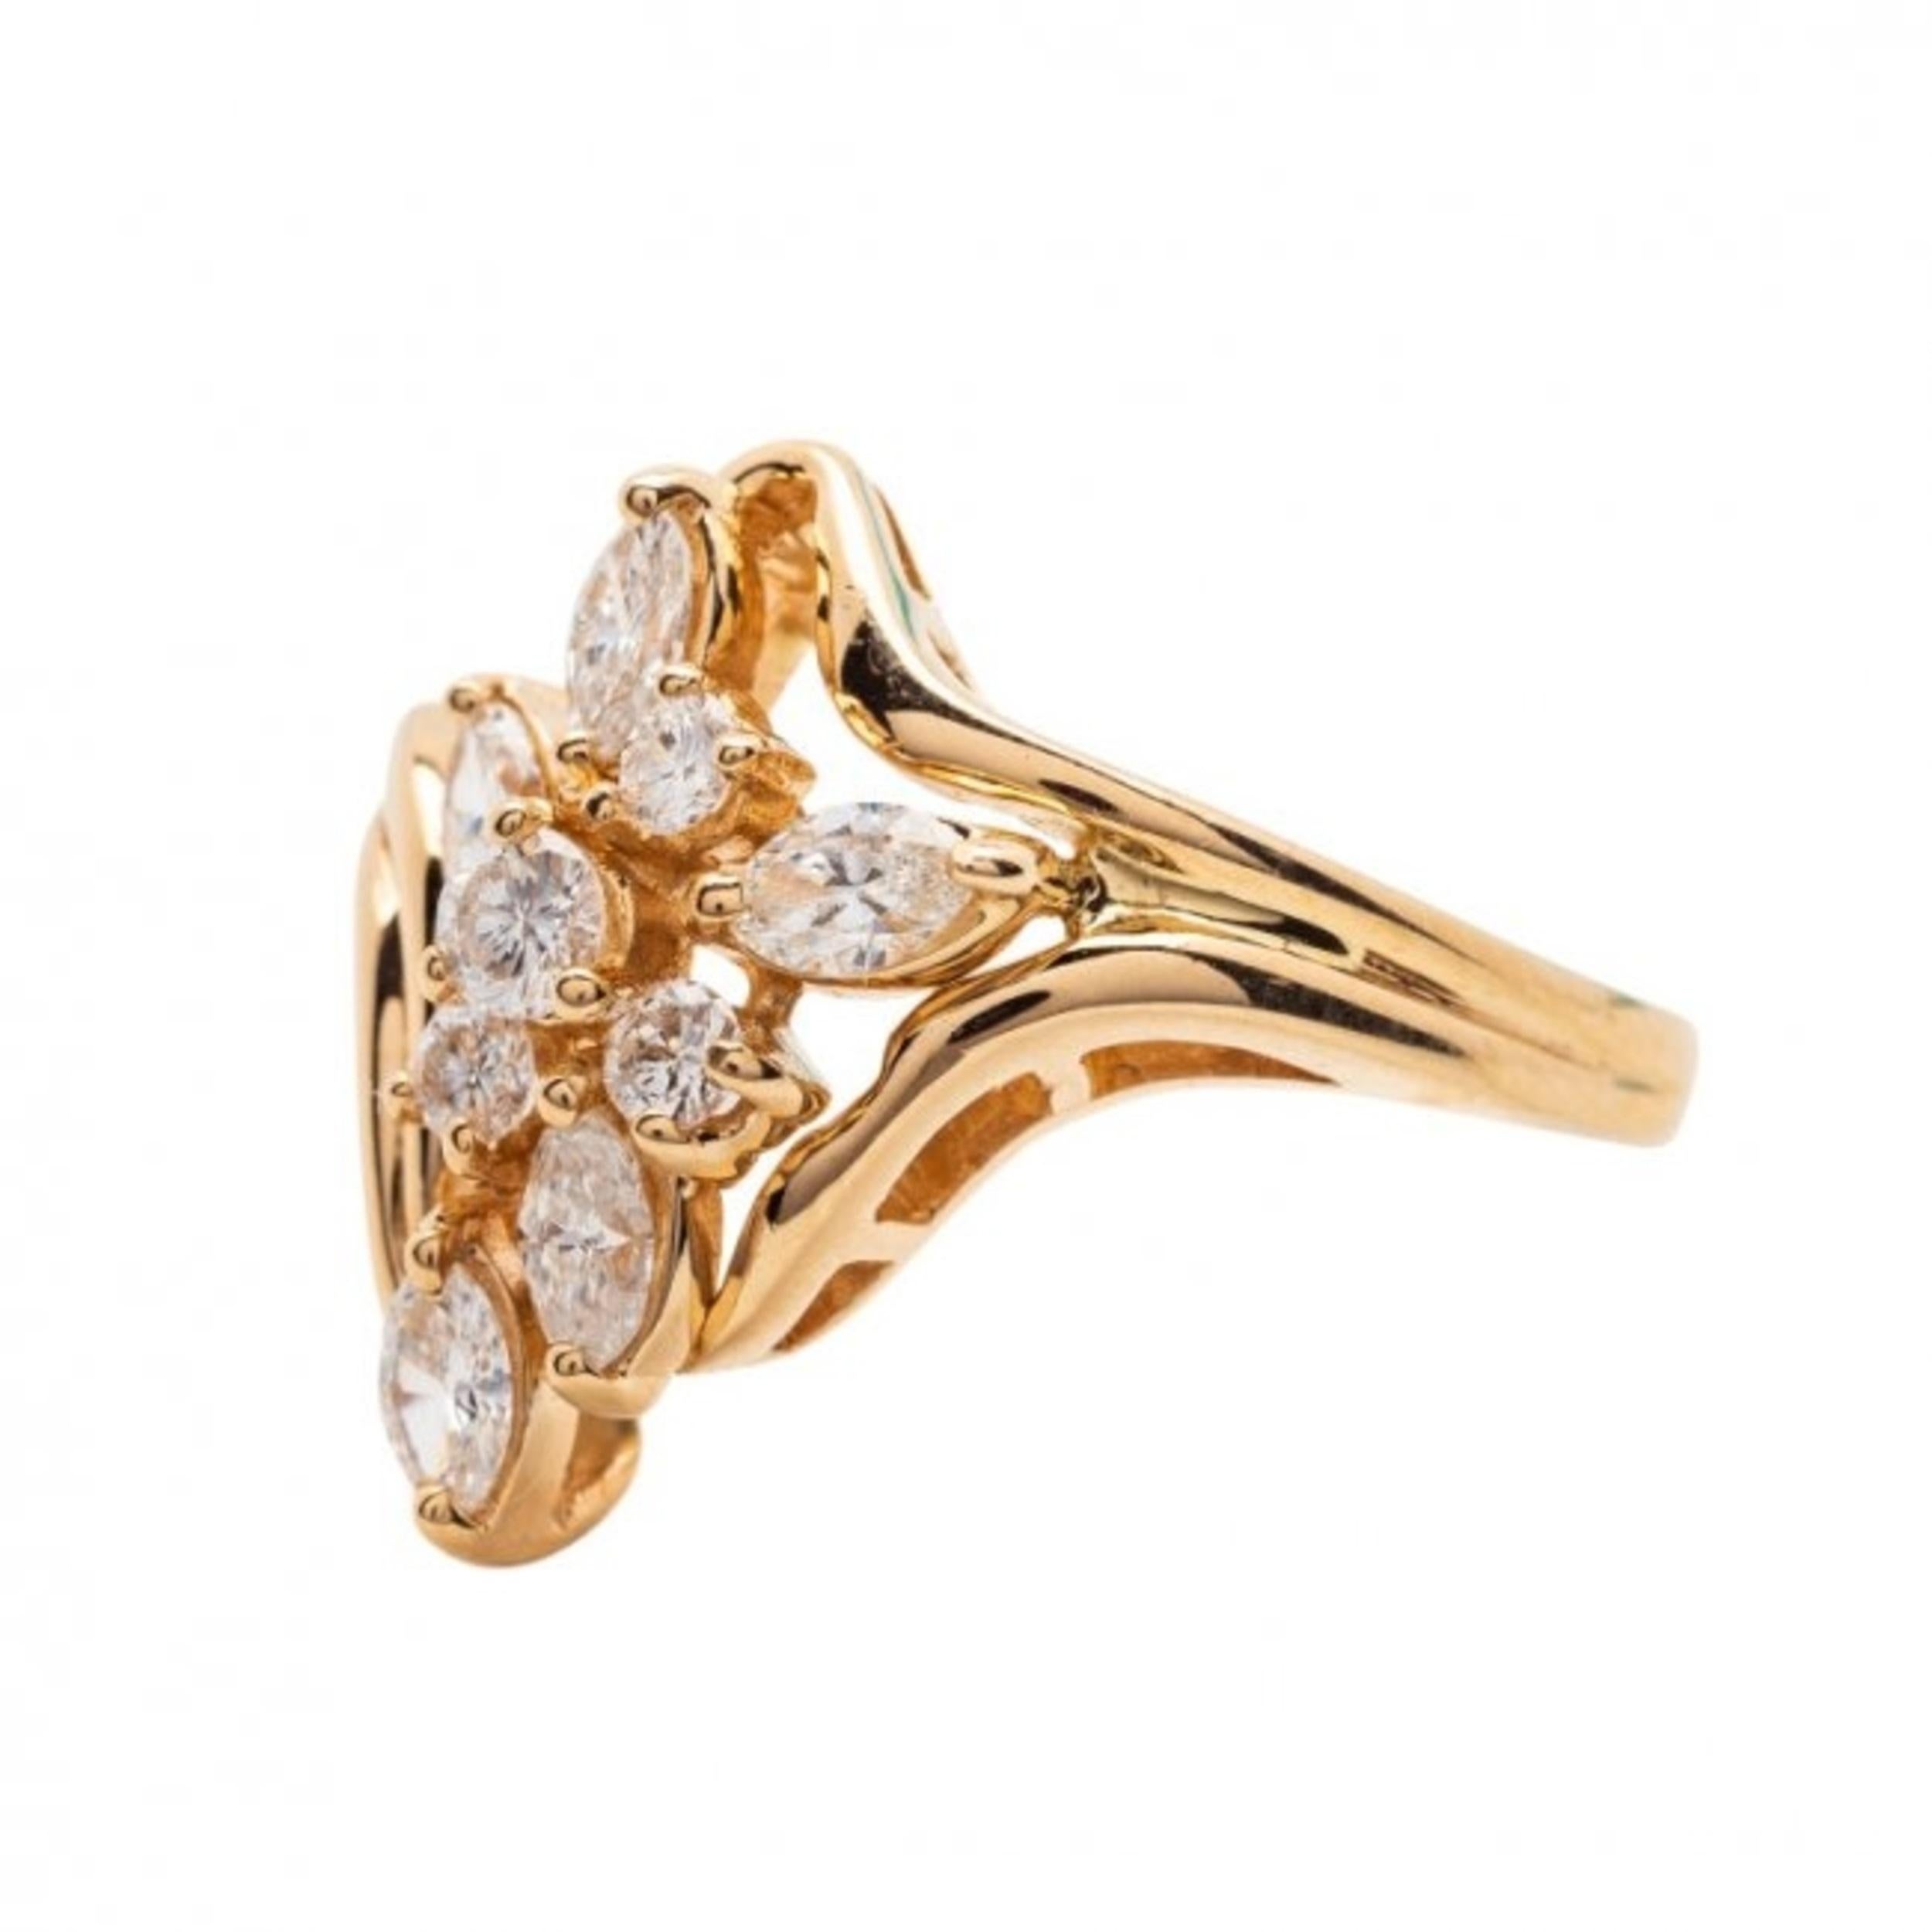 Schöner Gold- und Diamantring, signiert Trev
14 Karat Gelbgold und Diamanten
besetzt mit fünf Diamanten im Marquise- und vier im Rundschliff mit einem Gewicht von ca. 0,75 ct. 
6.7 Gramm, Größe 7 1/4